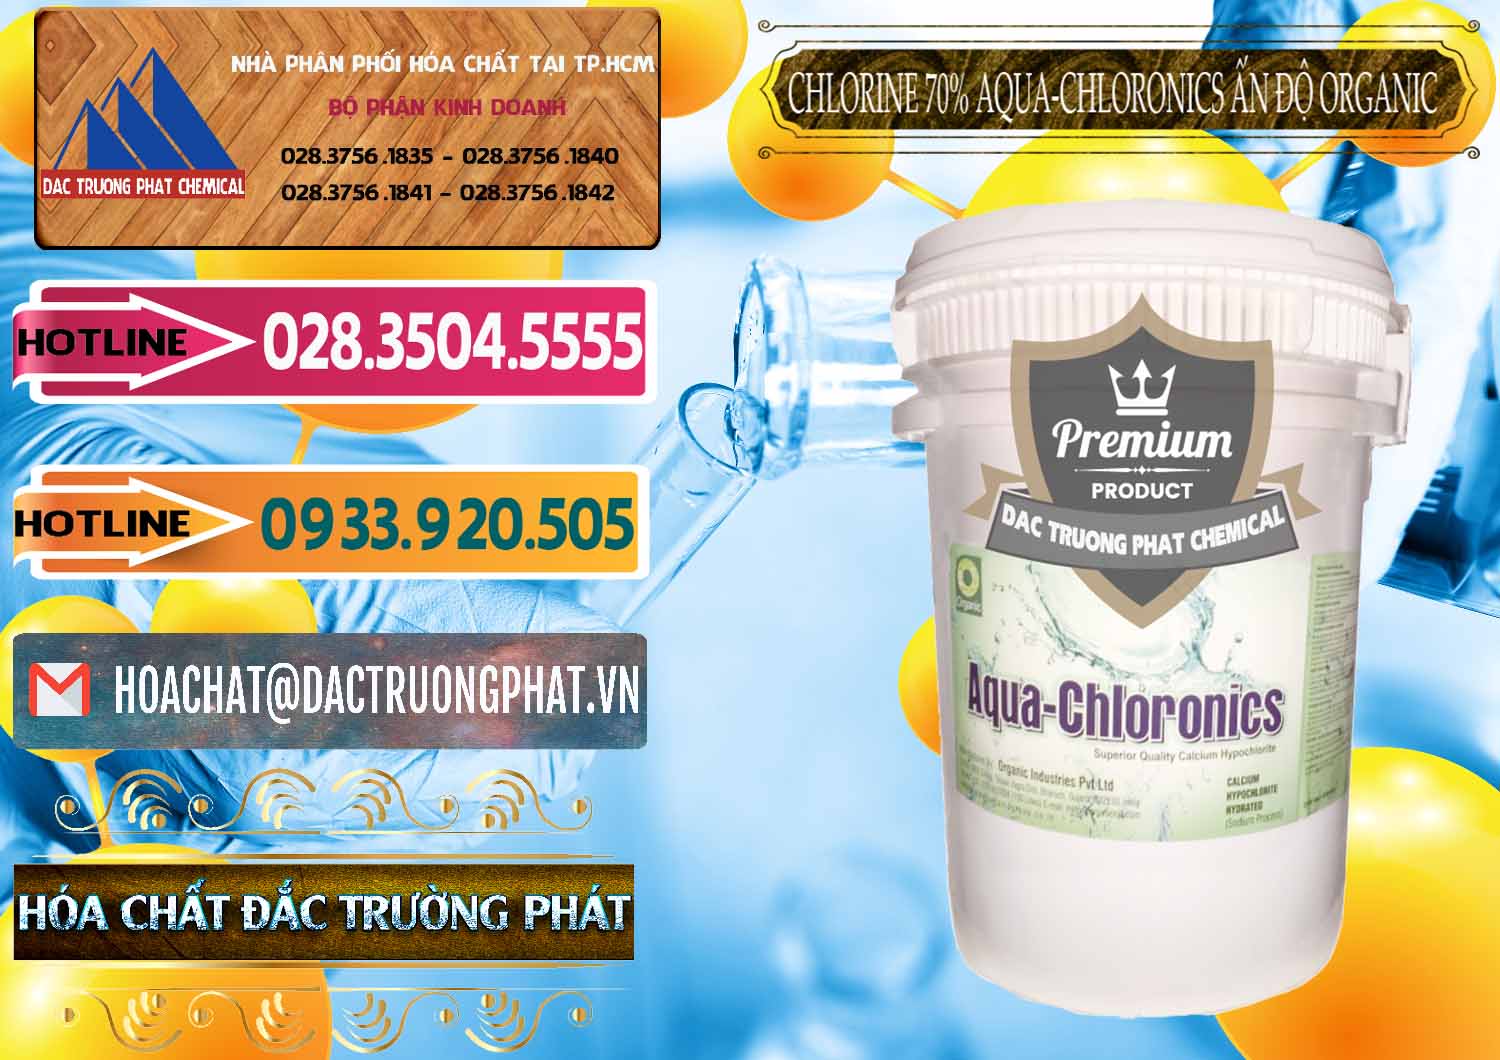 Nơi kinh doanh & bán Chlorine – Clorin 70% Aqua-Chloronics Ấn Độ Organic India - 0211 - Cty cung cấp và kinh doanh hóa chất tại TP.HCM - dactruongphat.vn